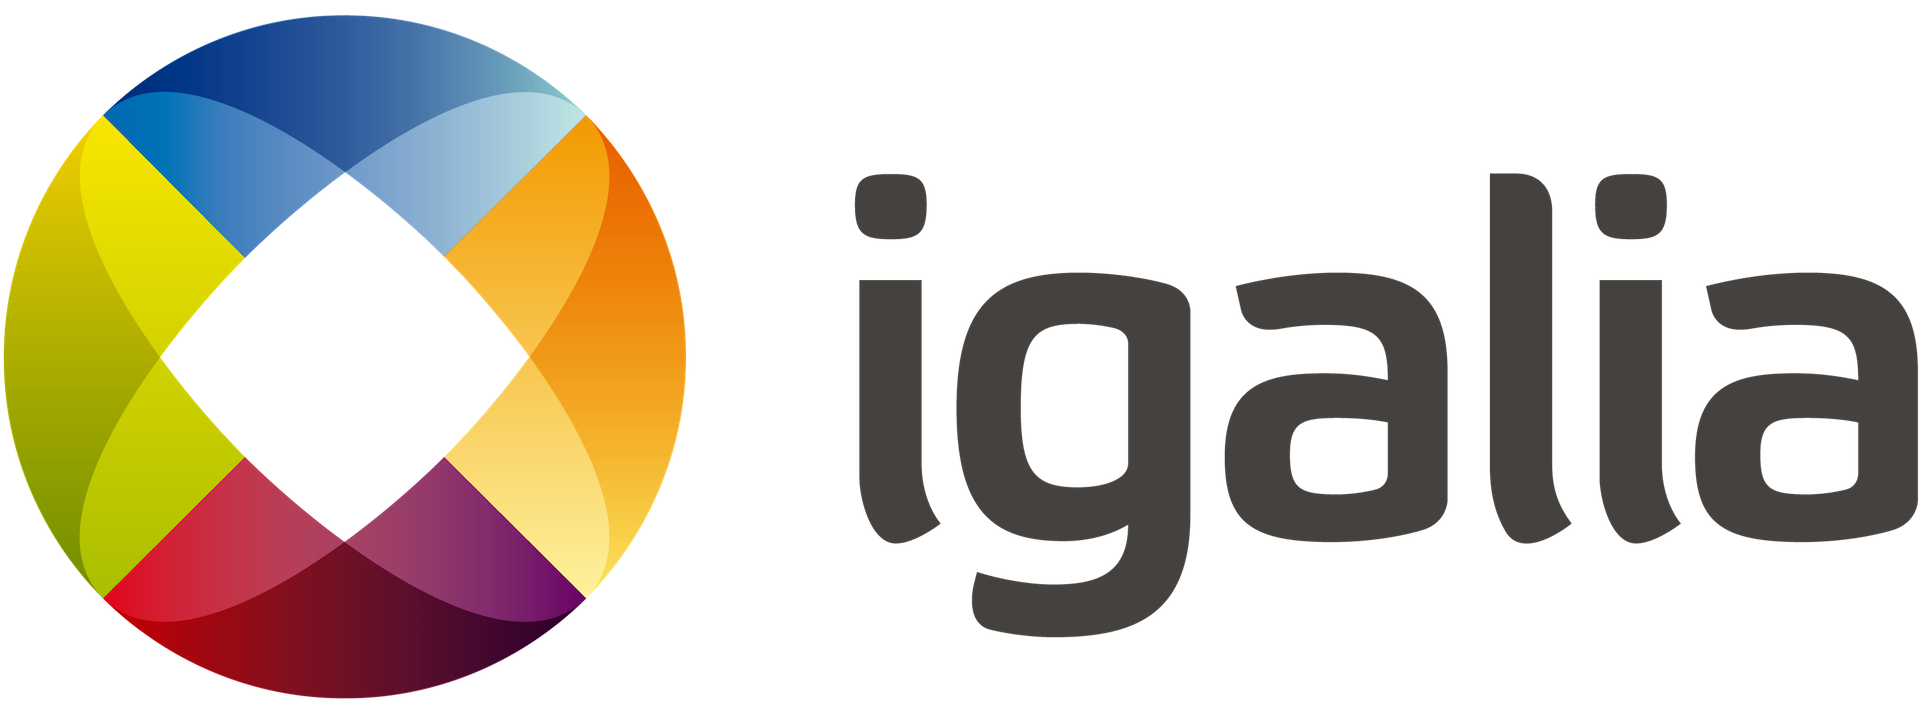 Igalia logo